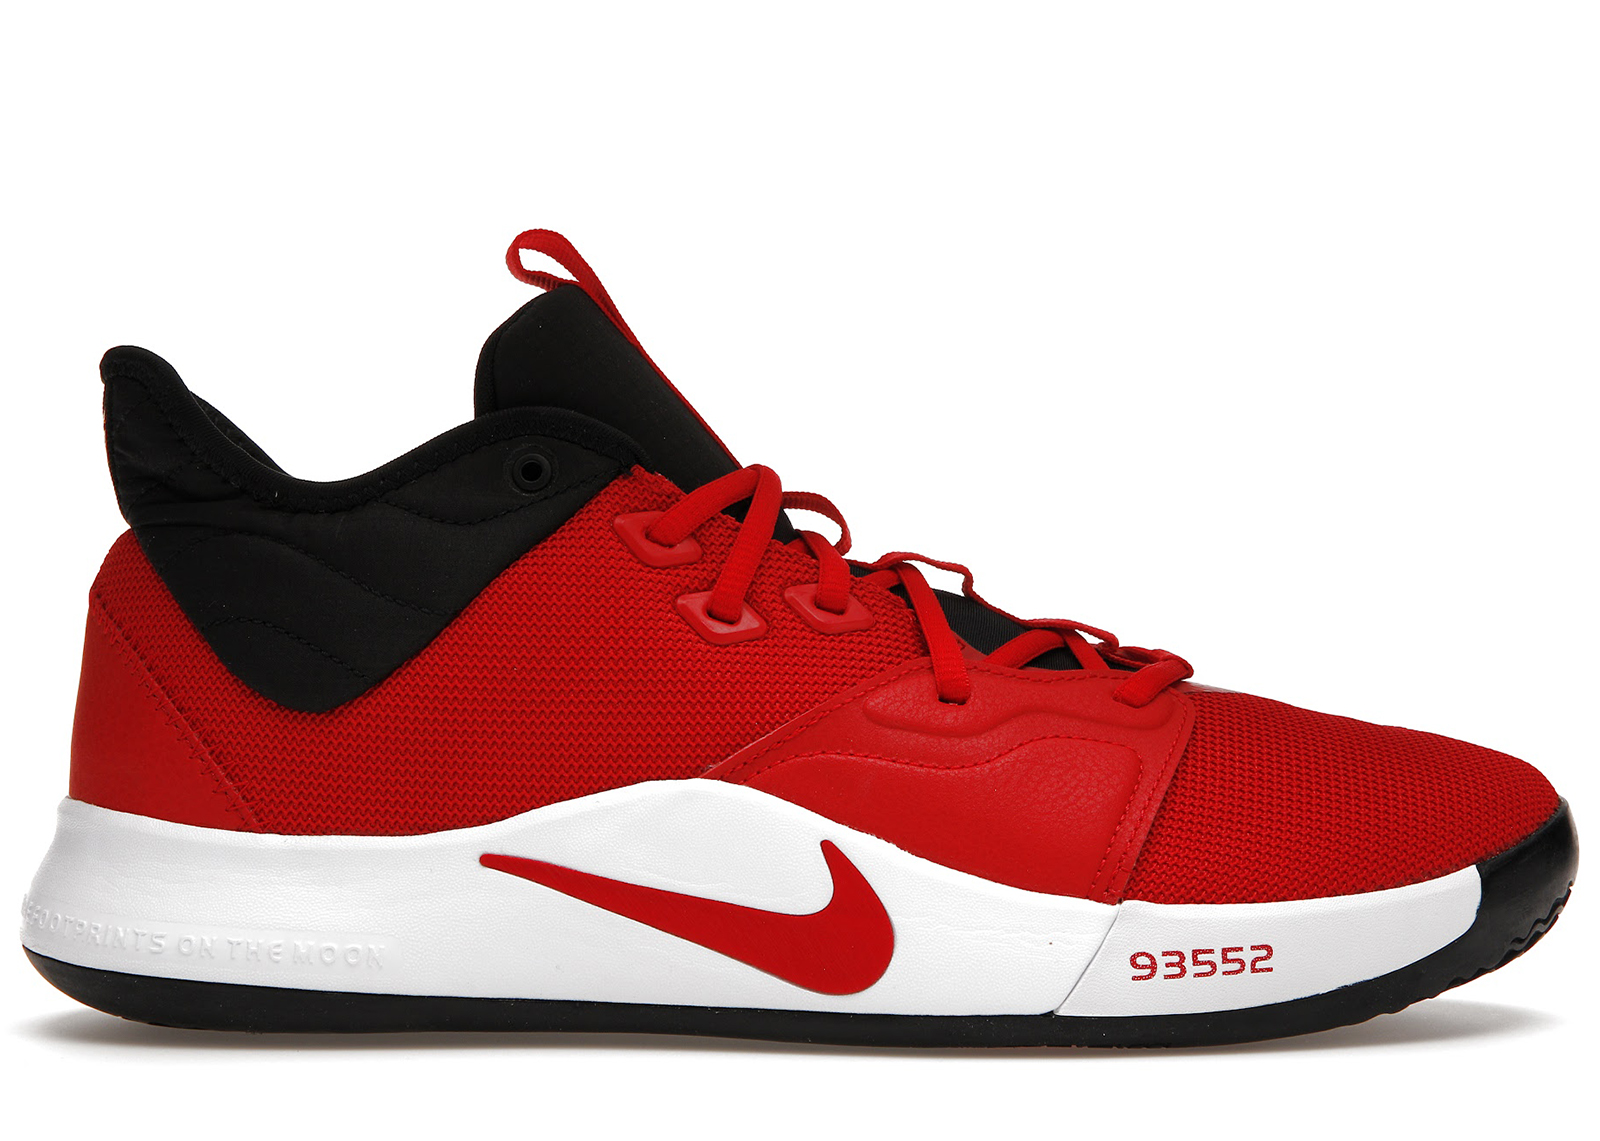 Nike PG 3 University Red - AO2607-600